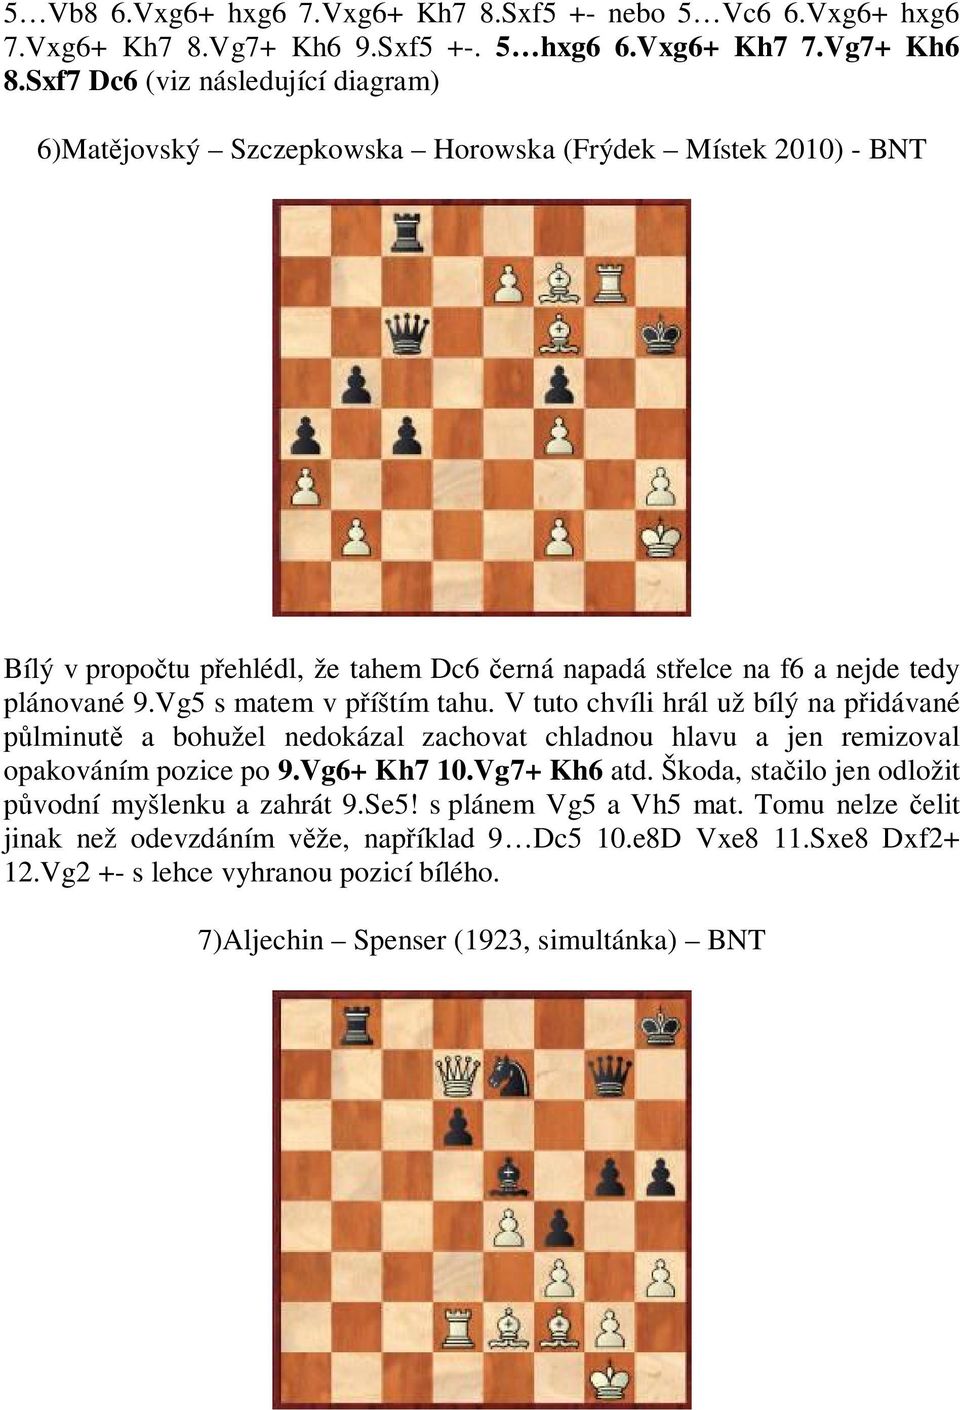 Vg5 s matem v p íštím tahu. V tuto chvíli hrál už bílý na p idávané lminut a bohužel nedokázal zachovat chladnou hlavu a jen remizoval opakováním pozice po 9.Vg6+ Kh7 10.Vg7+ Kh6 atd.